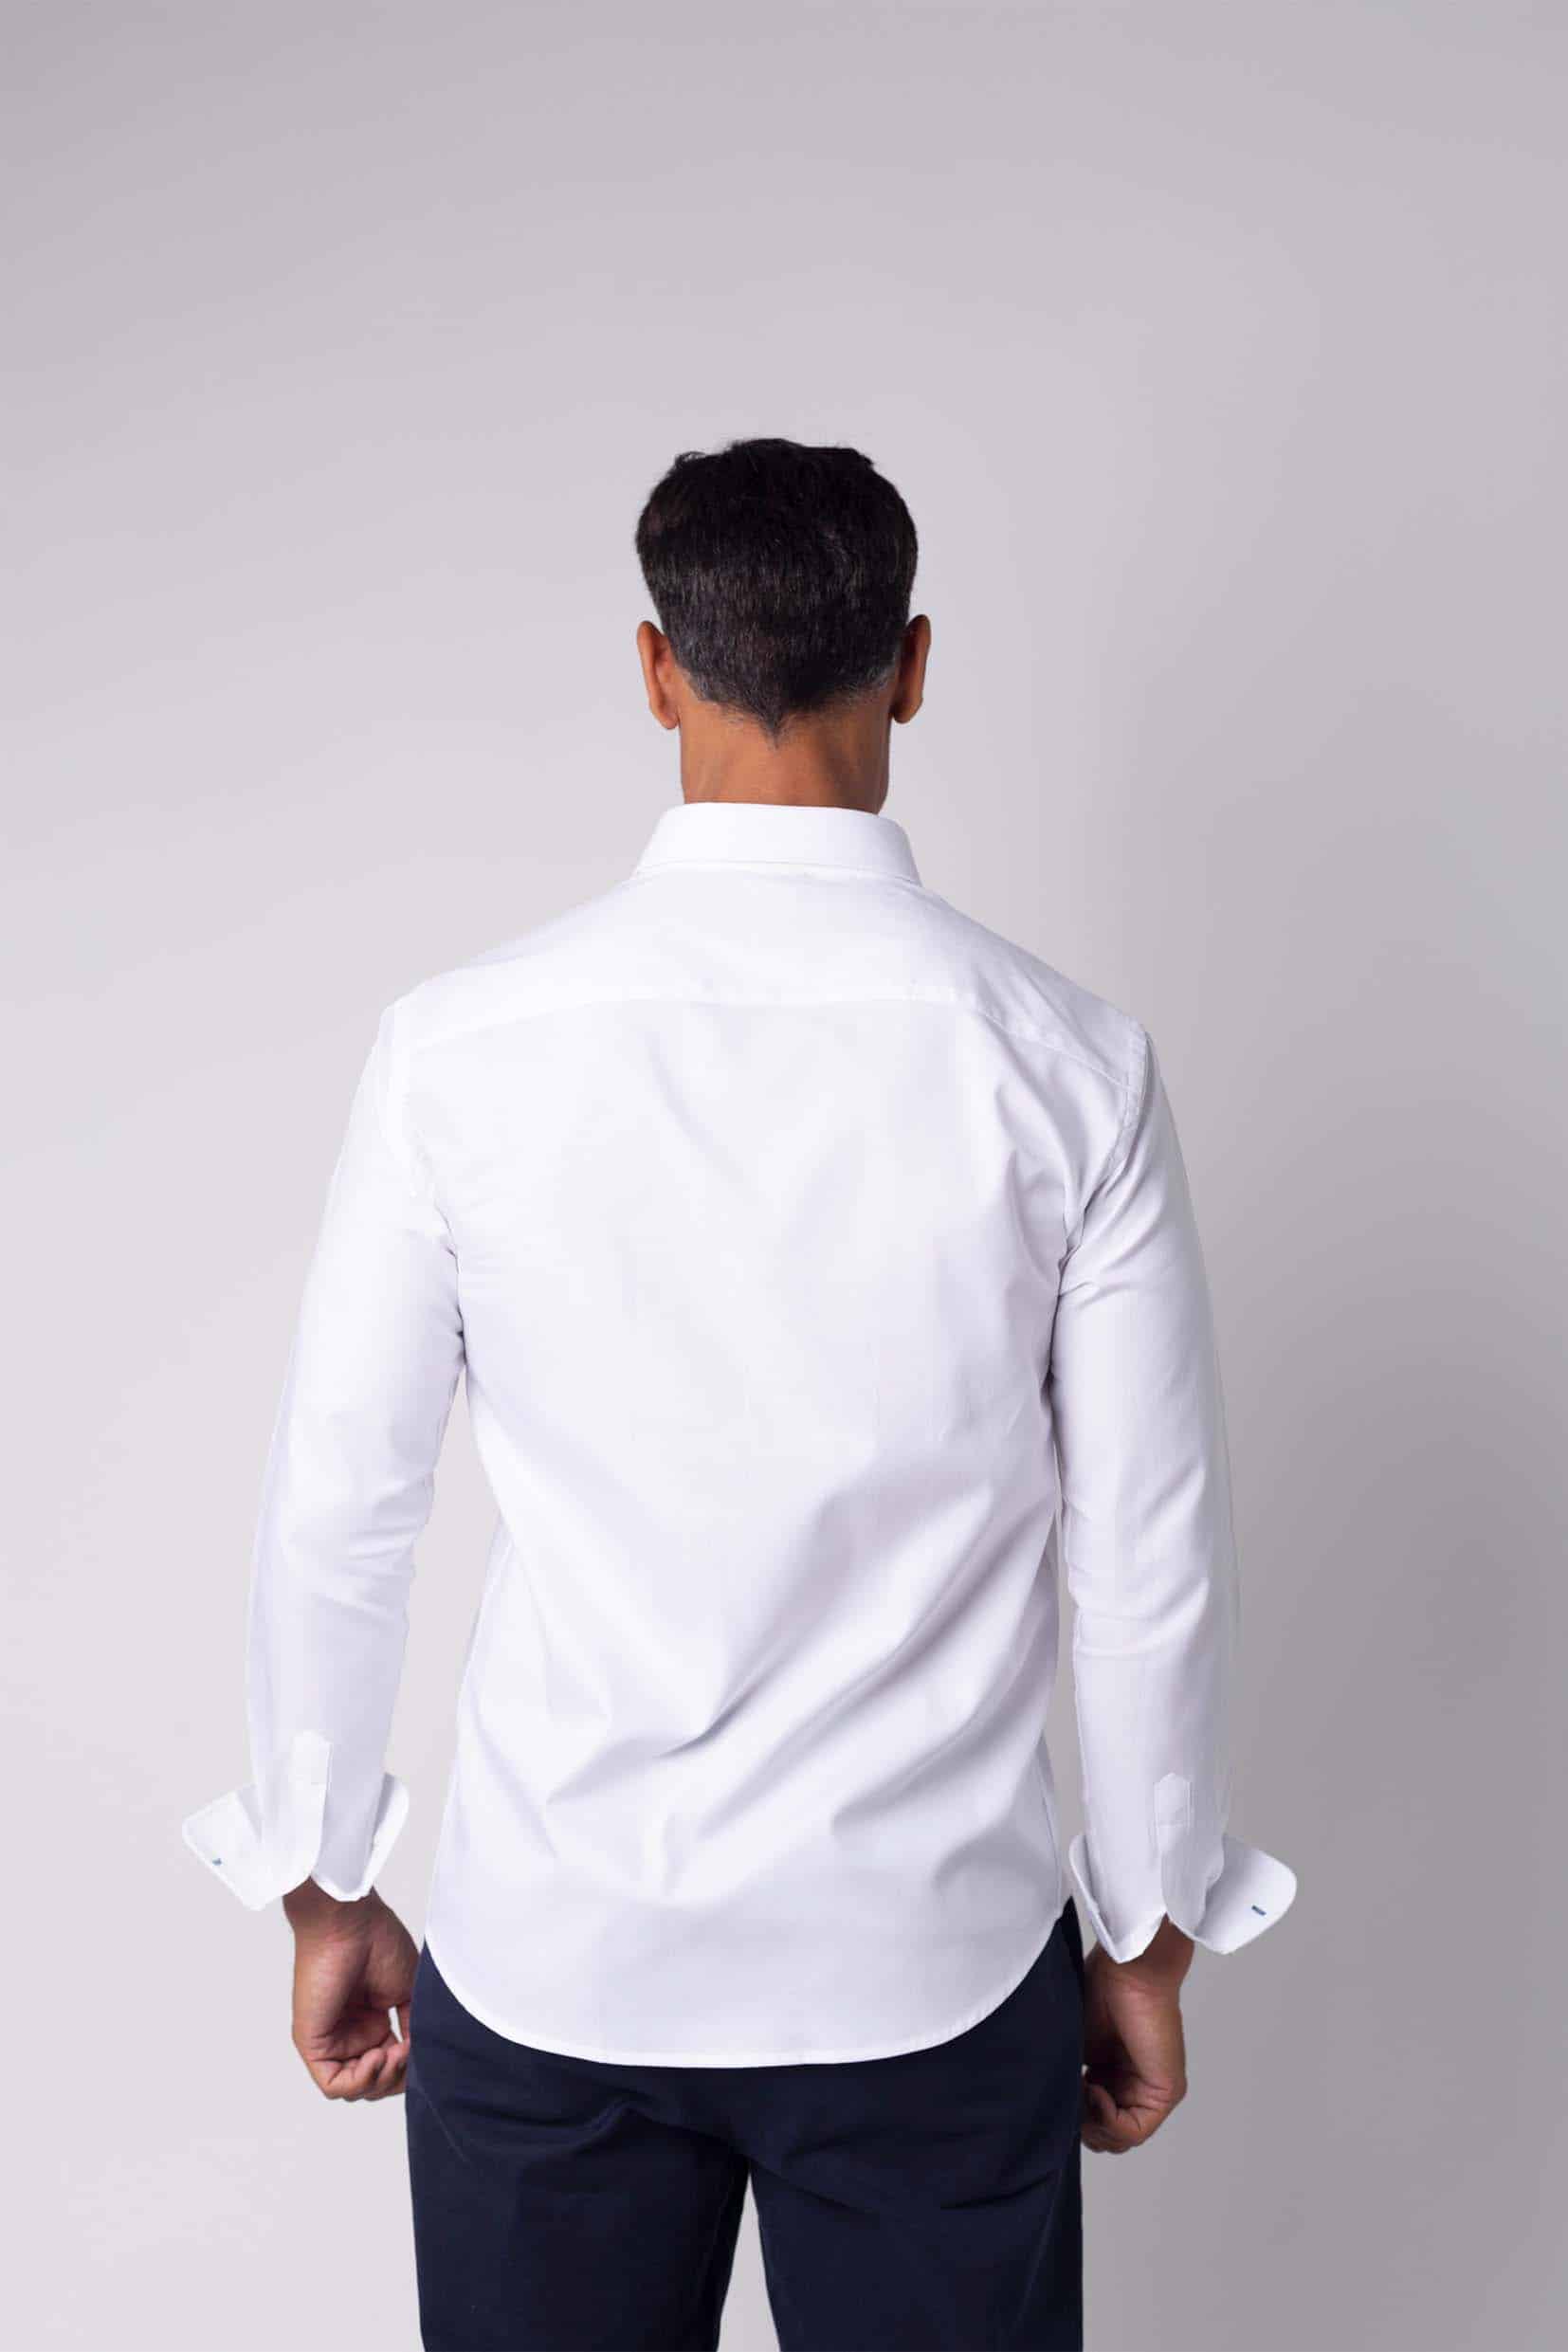 Modelo con camisa blanca Colección pura alma